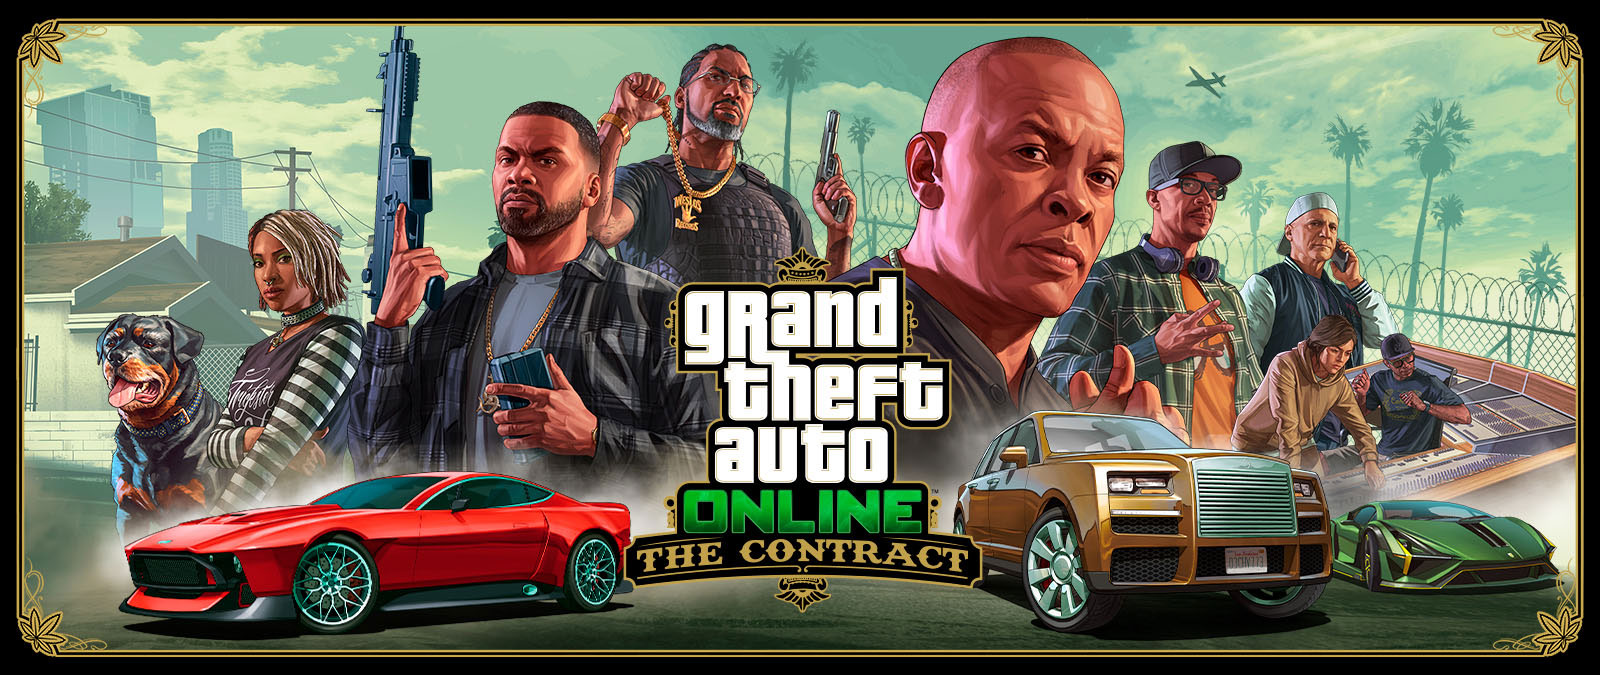 Grand Theft Auto Online, The Contract, Franklin, zeven andere vrienden en Chop de hond op een rij achter drie exotische auto's. 